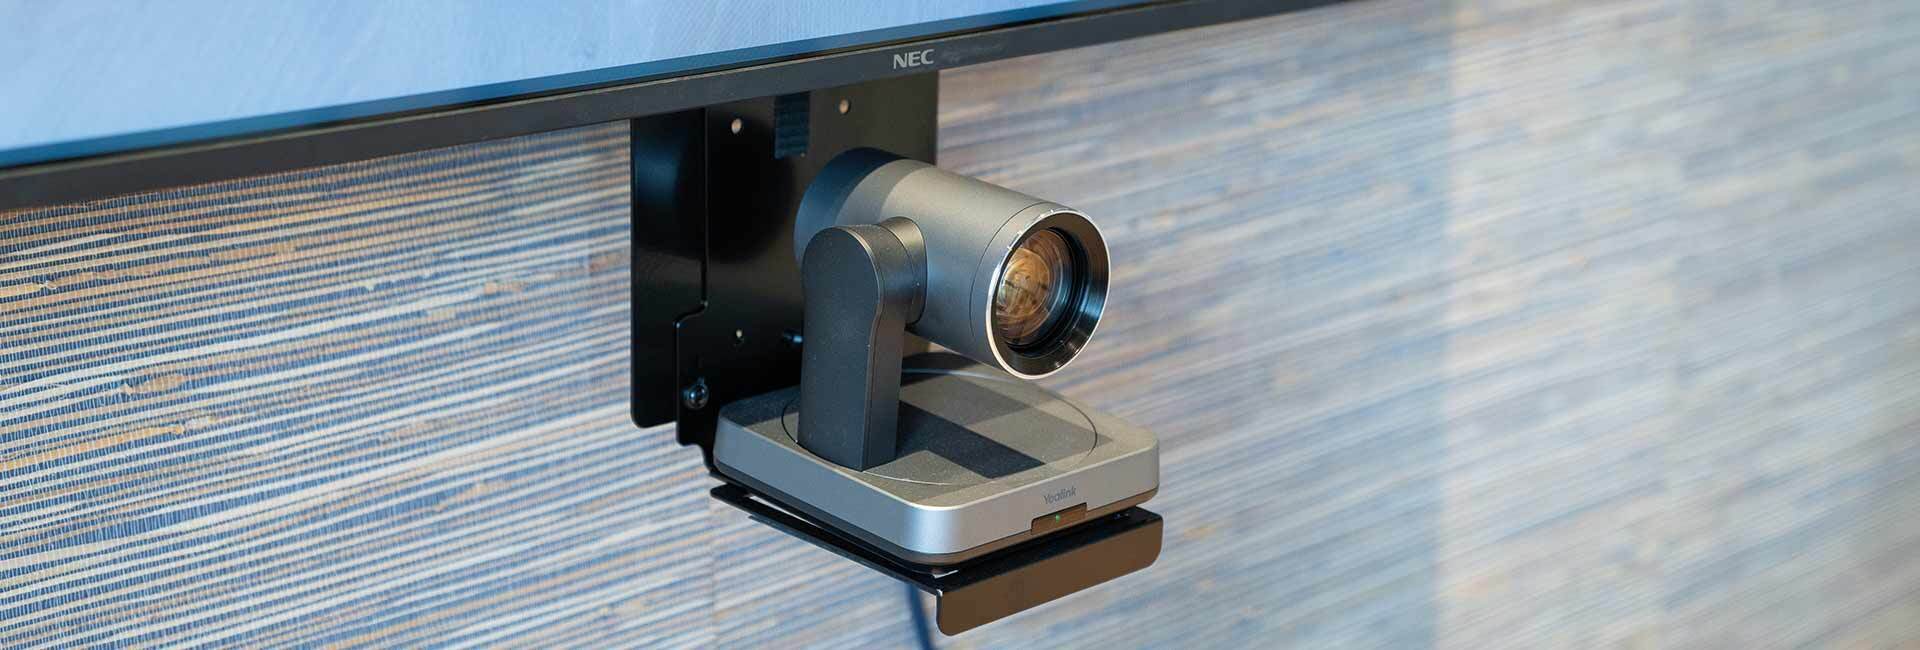 van-staveren-cameravolgsysteem